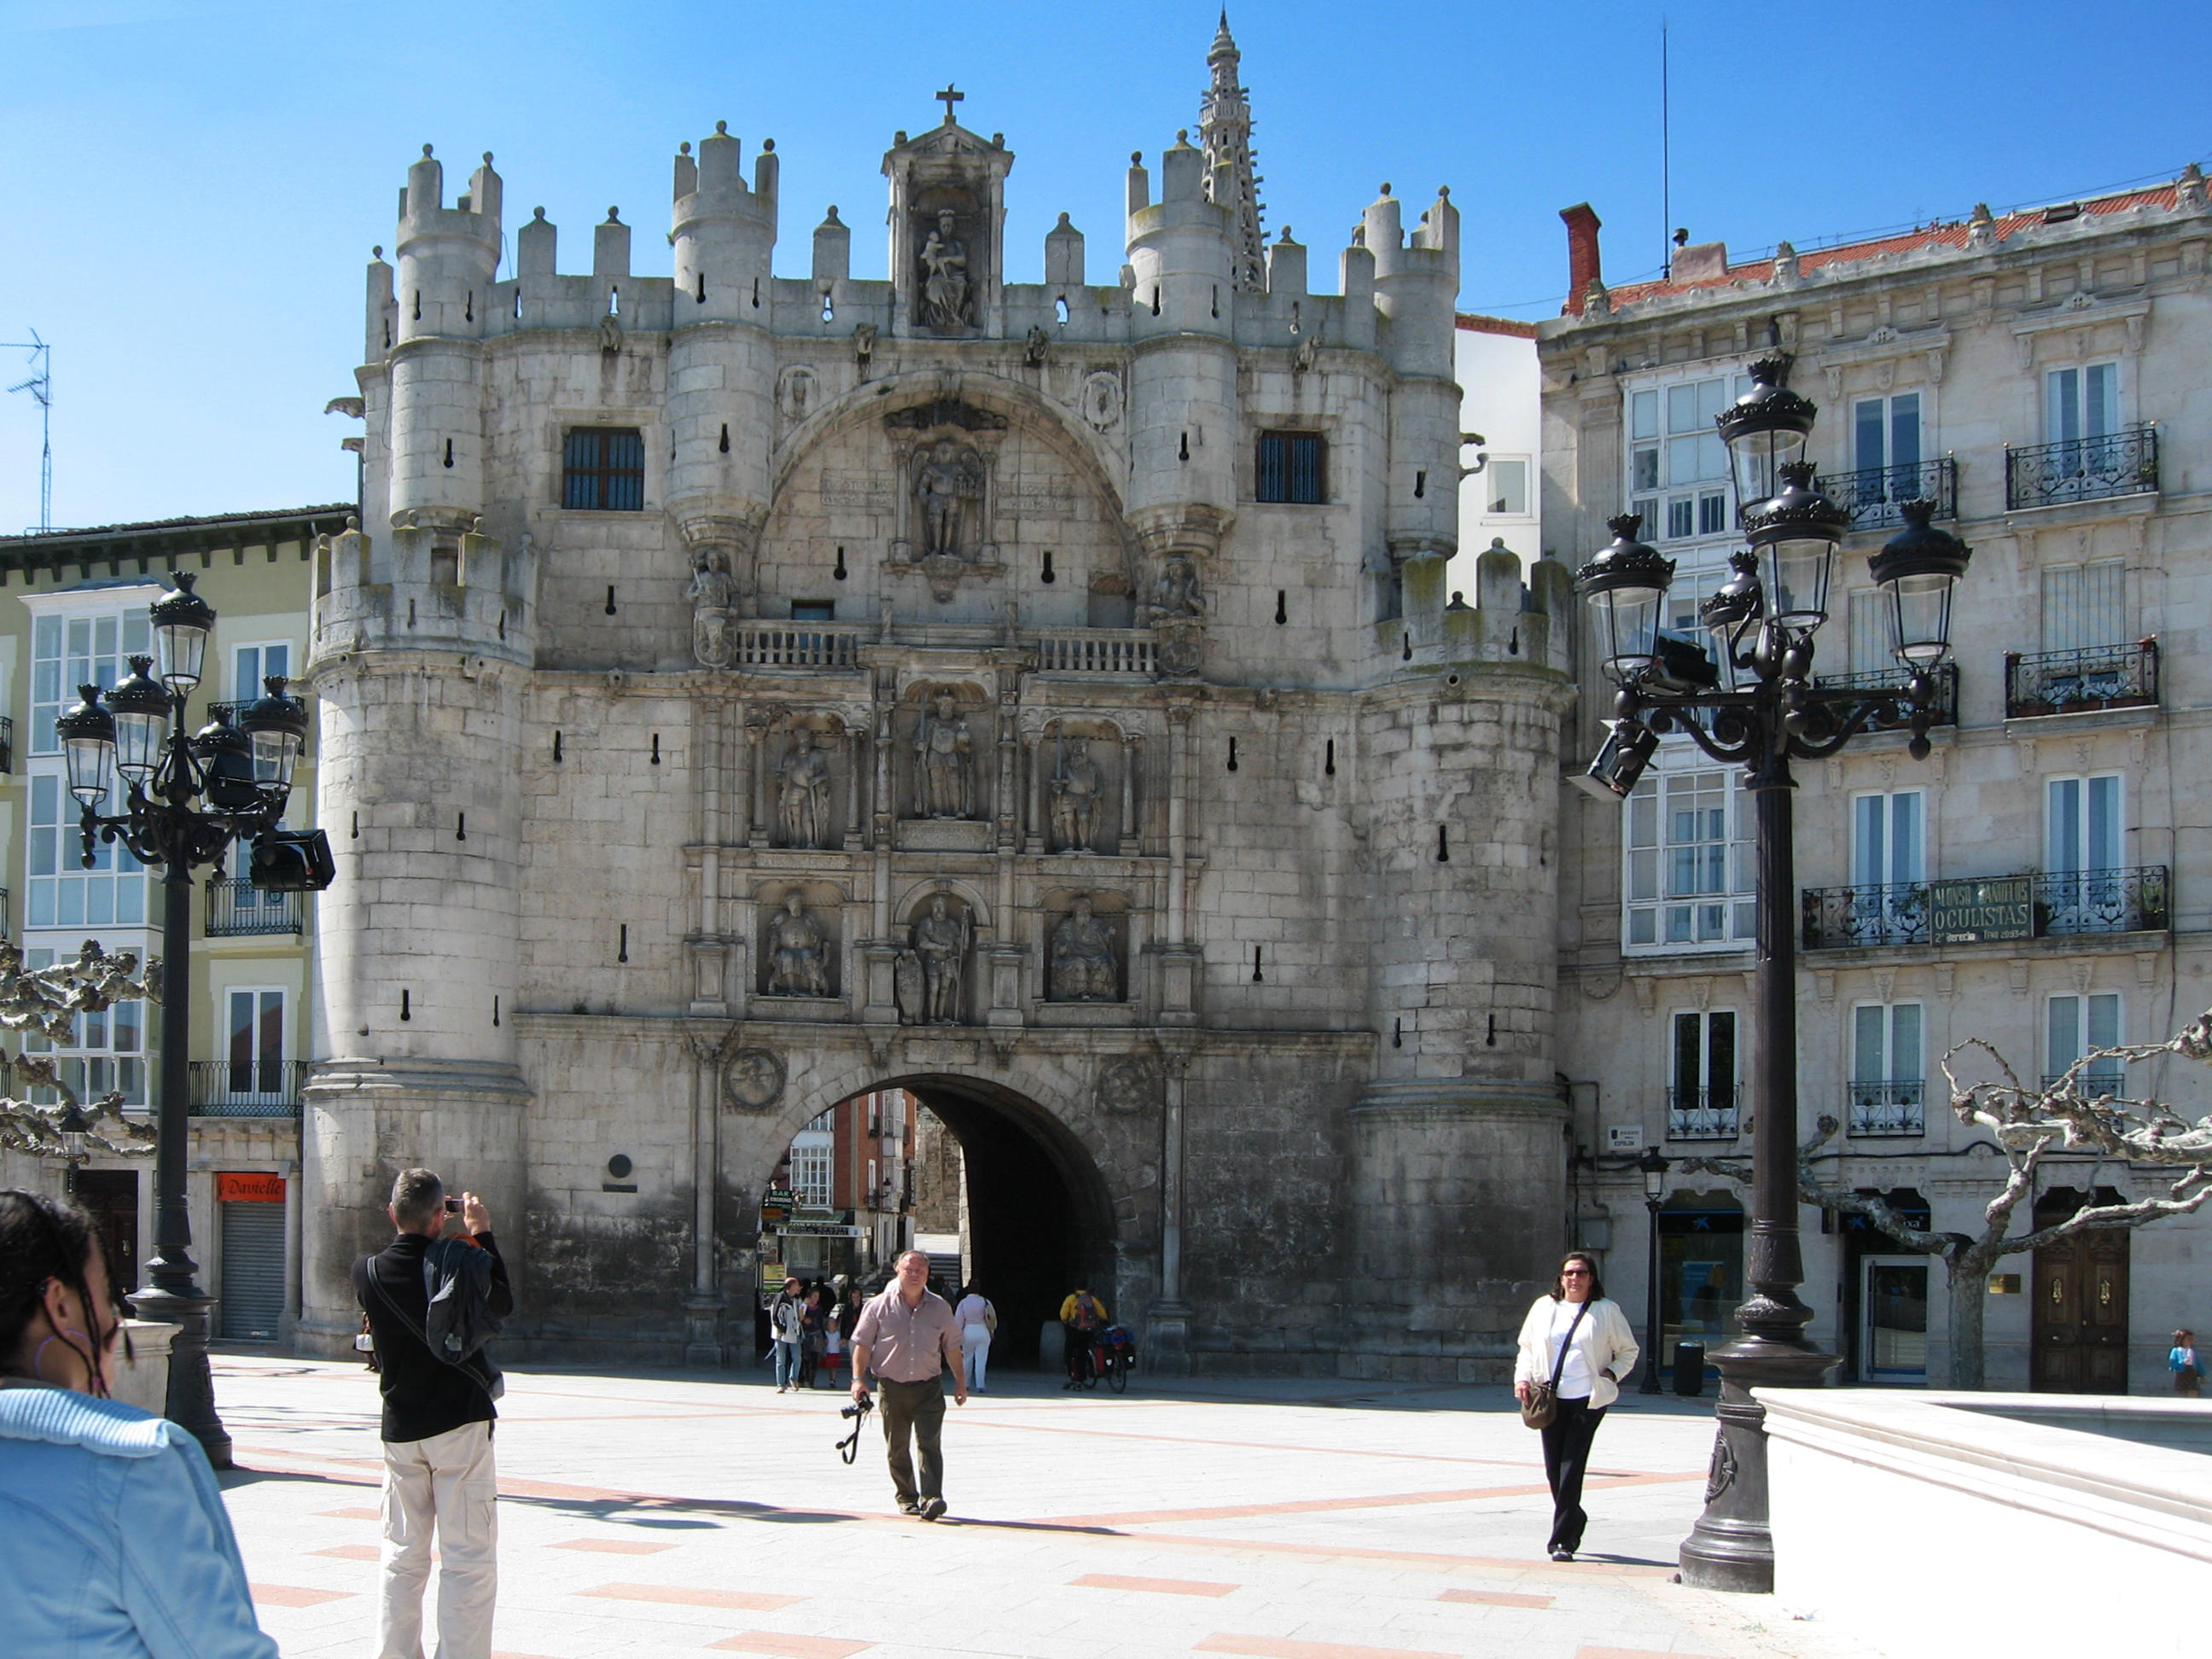 Arco de Santa Maria in Burgos